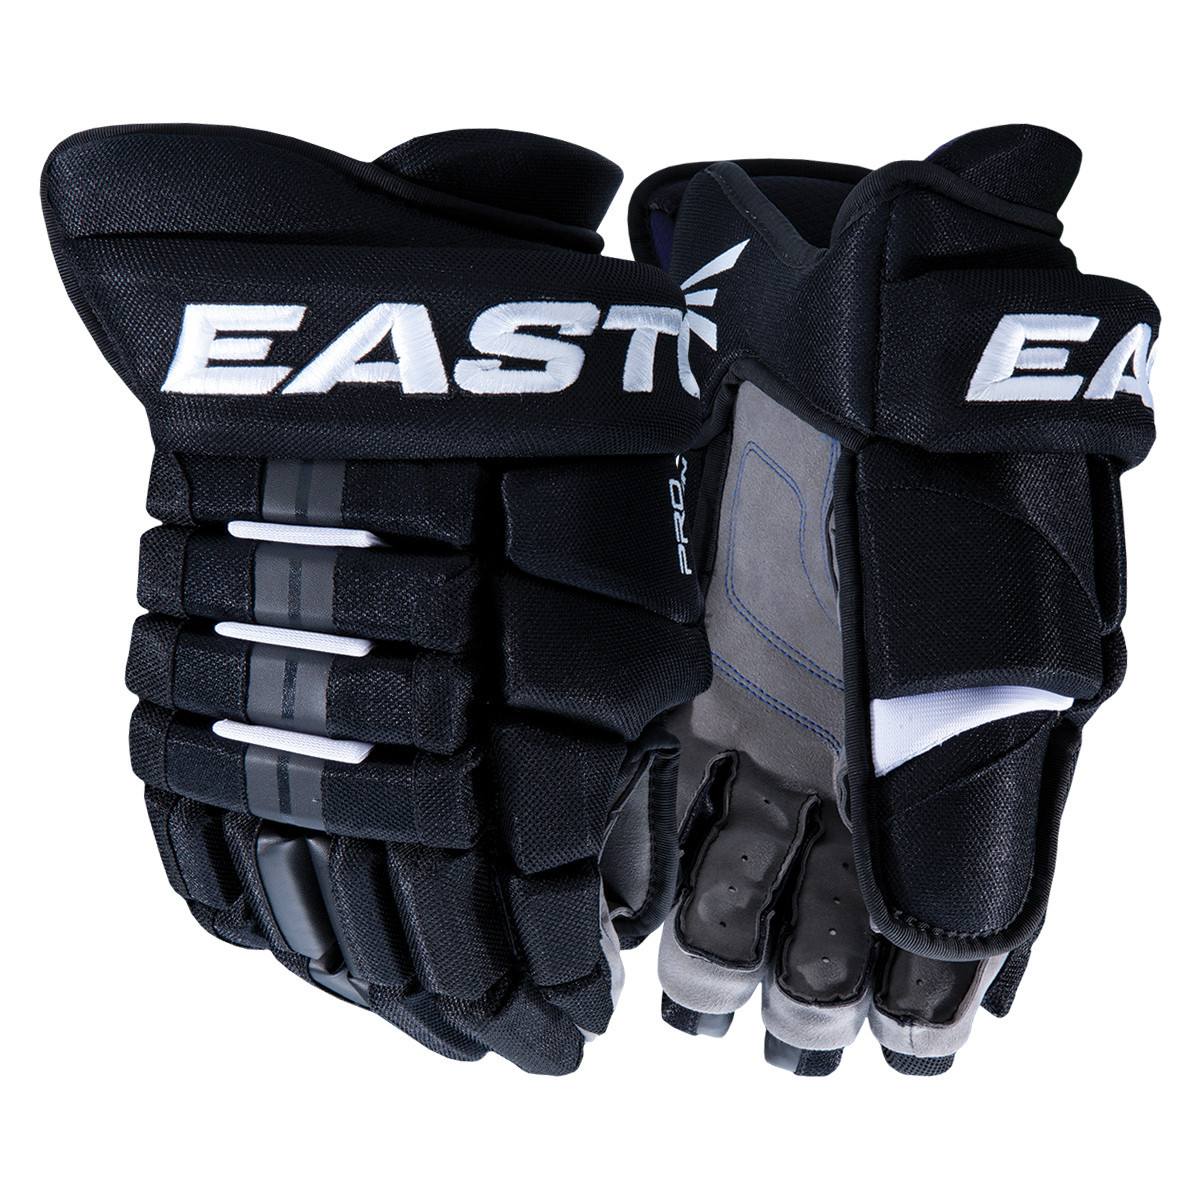 Easton Hockey Gloves Sizing Chart